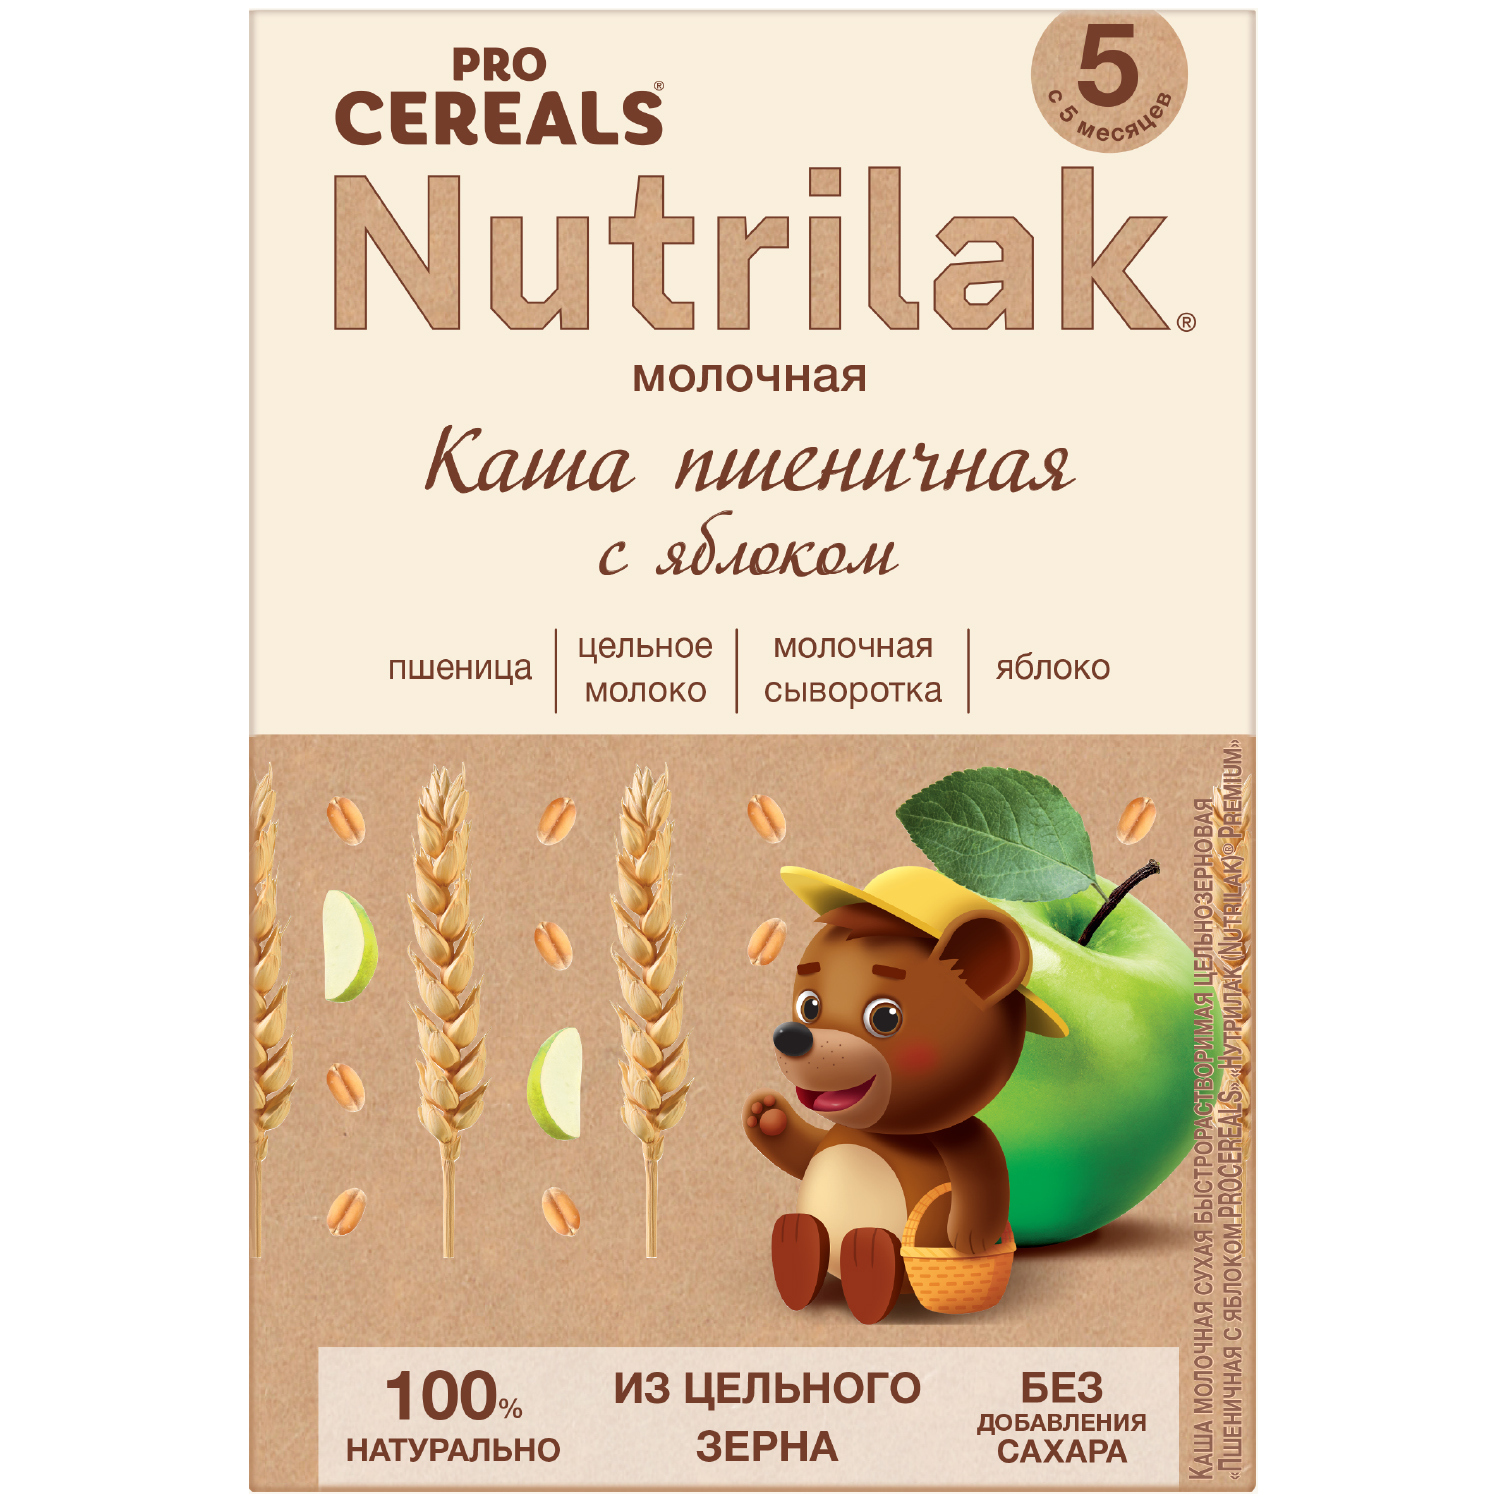 Пшеничные яблоком. Nutrilak Pro Cereals. Нутрилак каша молочная. Каша Нутрилак премиум. Nutrilak каша Procereals мол.